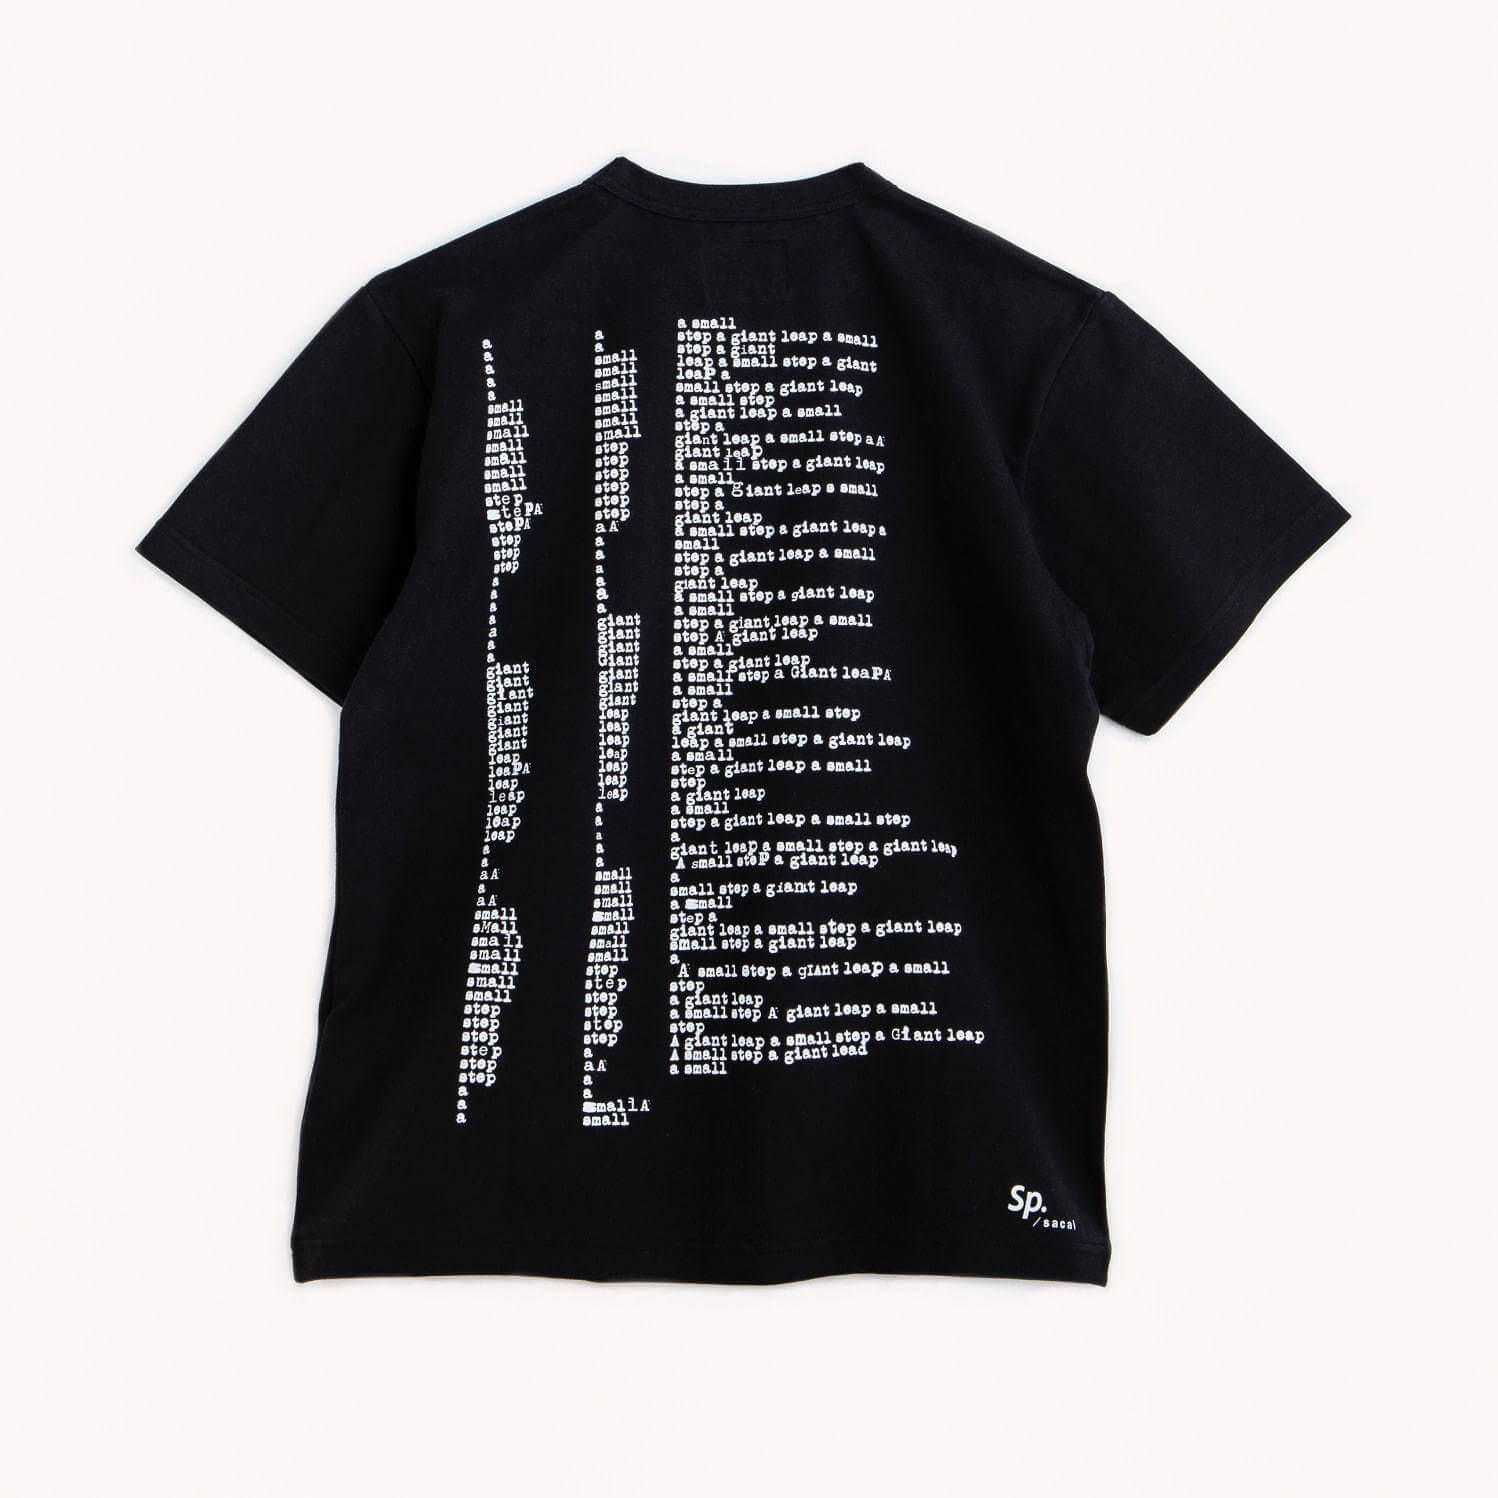 Sacaiよりニール アームストロングの名言tシャツが1 18 土 発売 Leak Tokyo